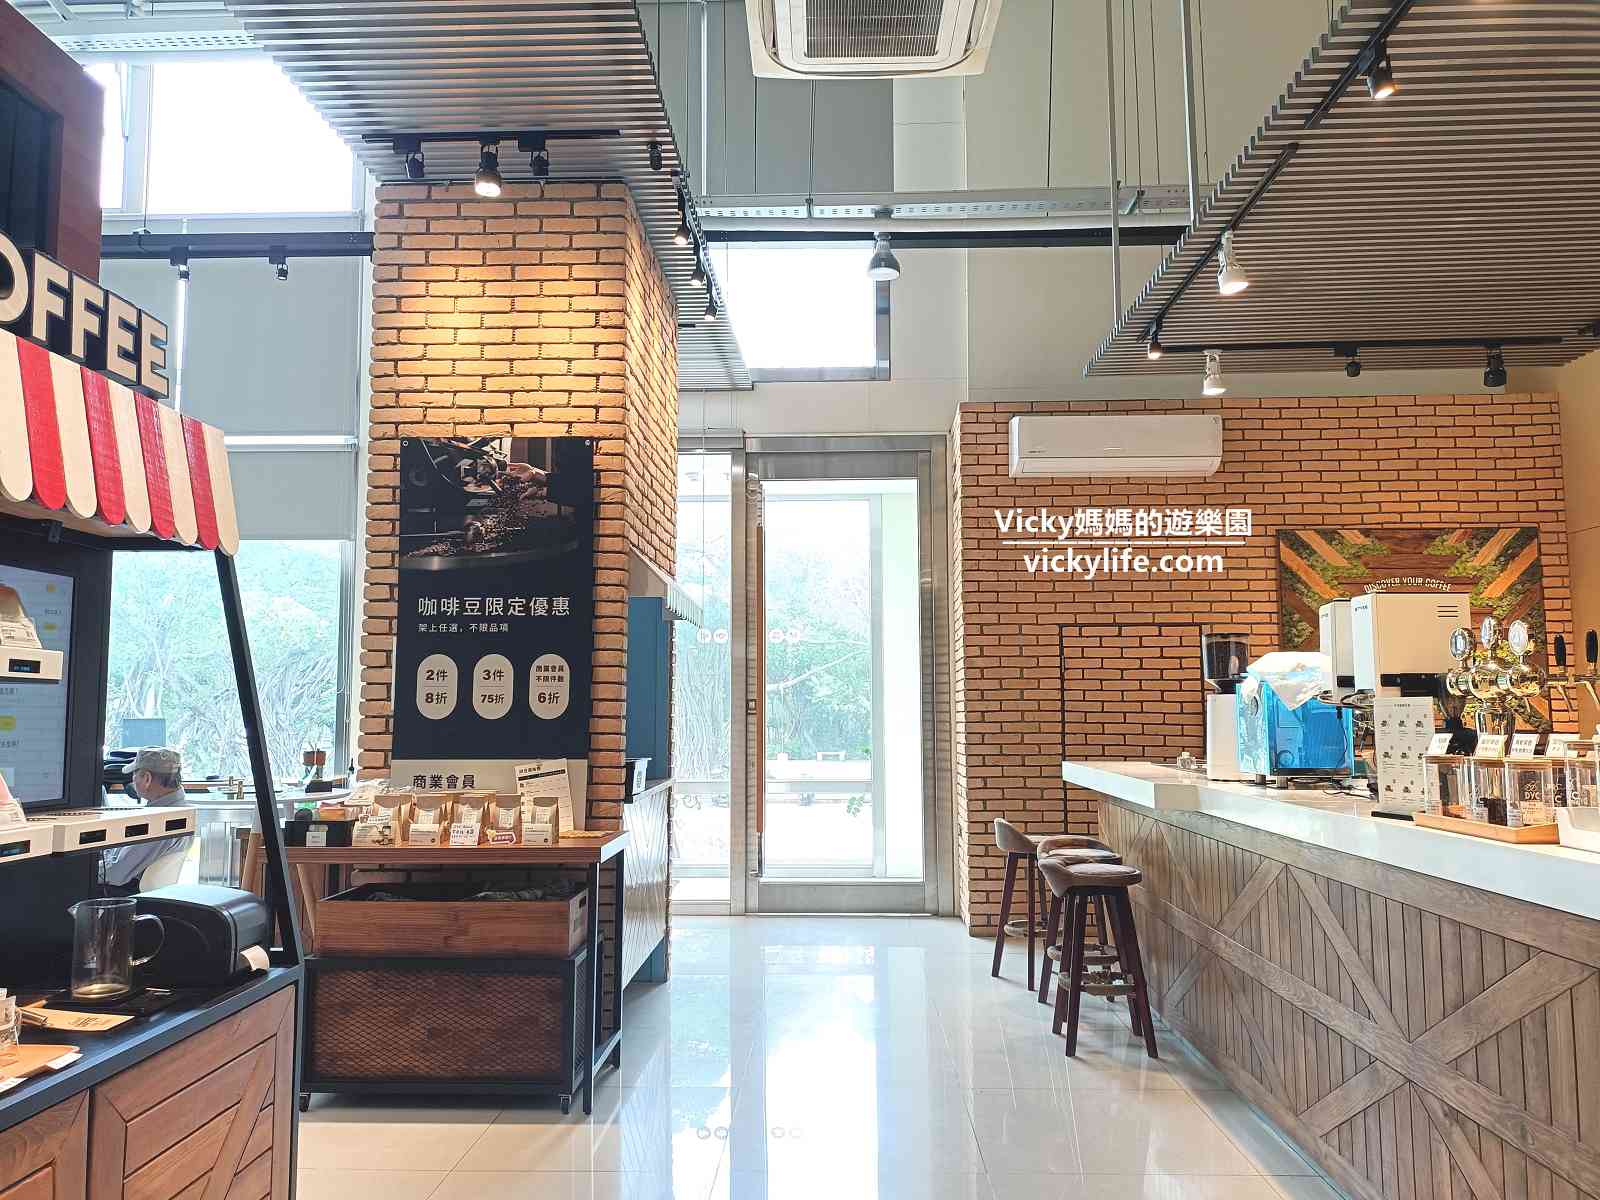 台南新營︱DYC Coffee 打咖啡 新營文化中心門市：坐在靠窗區，享受一片綠意盎然，無負擔的雞胸肉餐點吃起來(菜單)